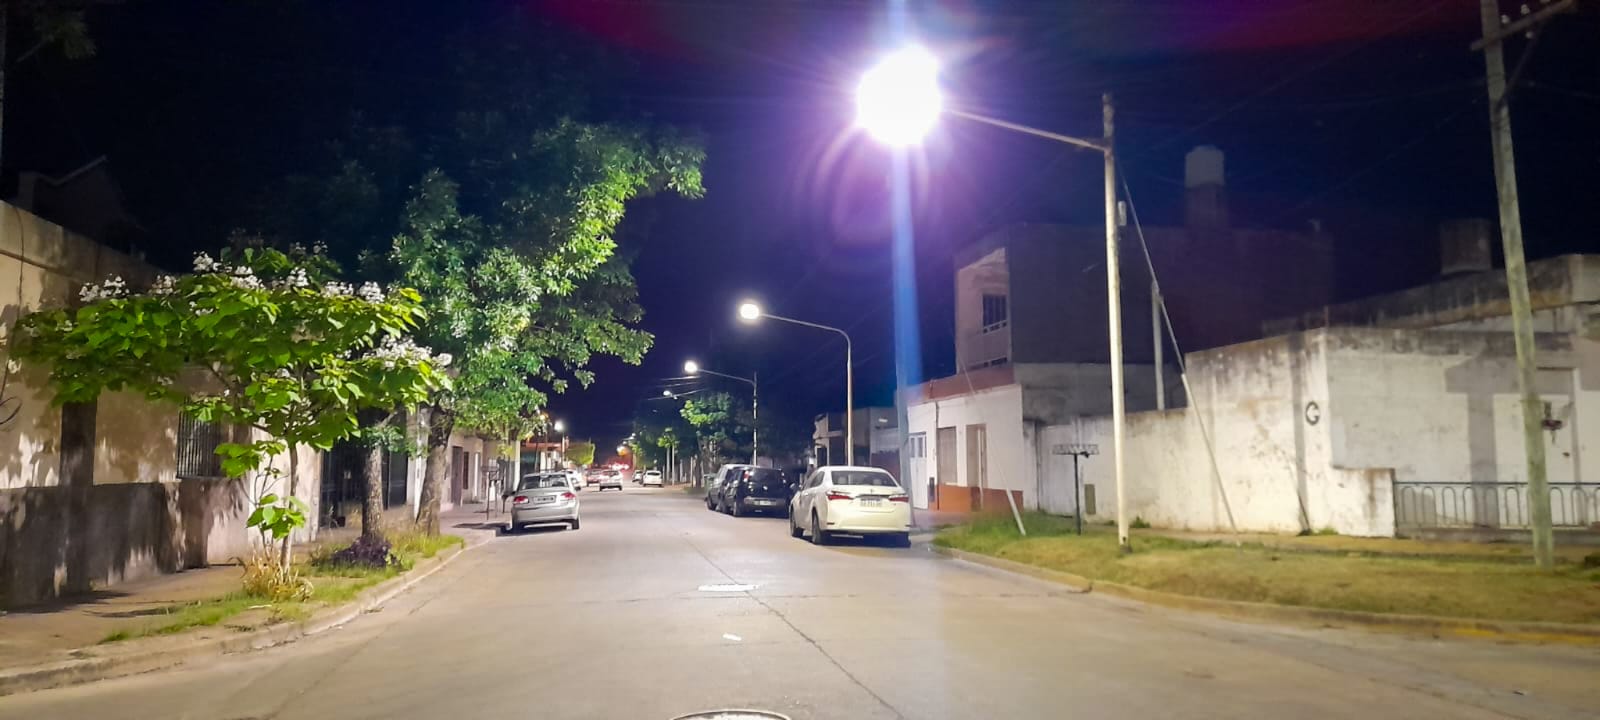 luces led barrios 2